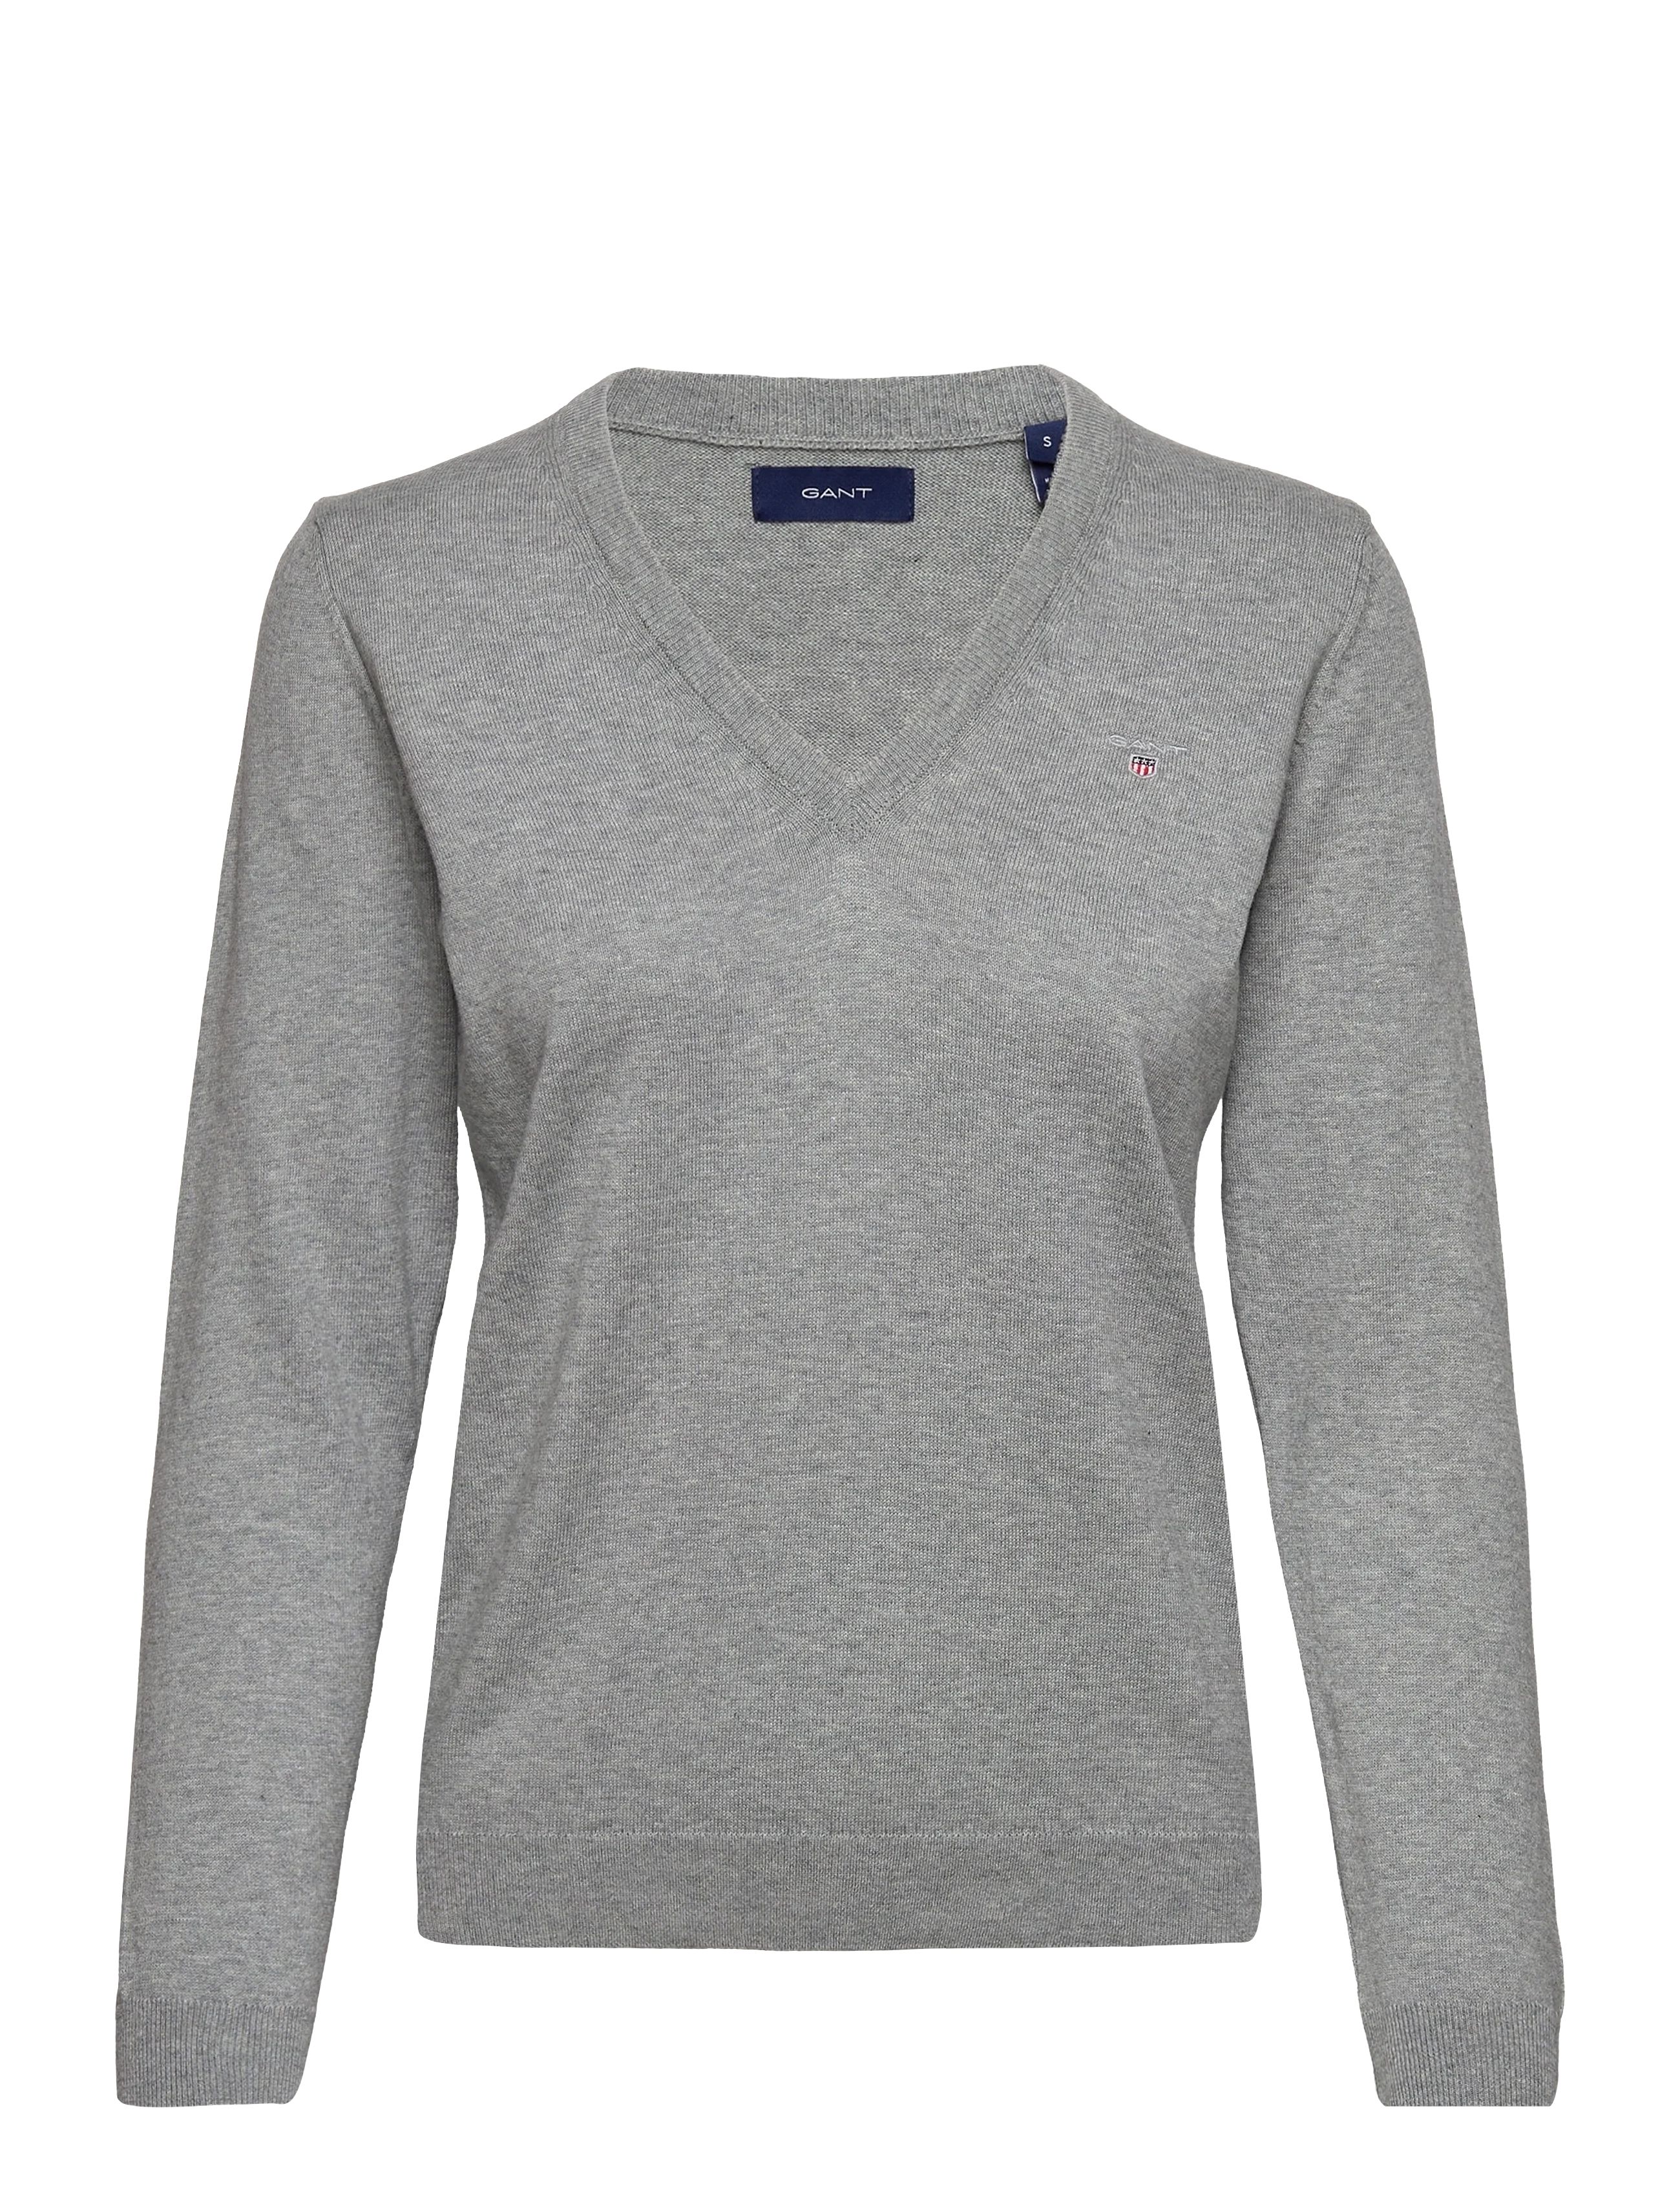 Пуловер женский GANT 483042 серый M